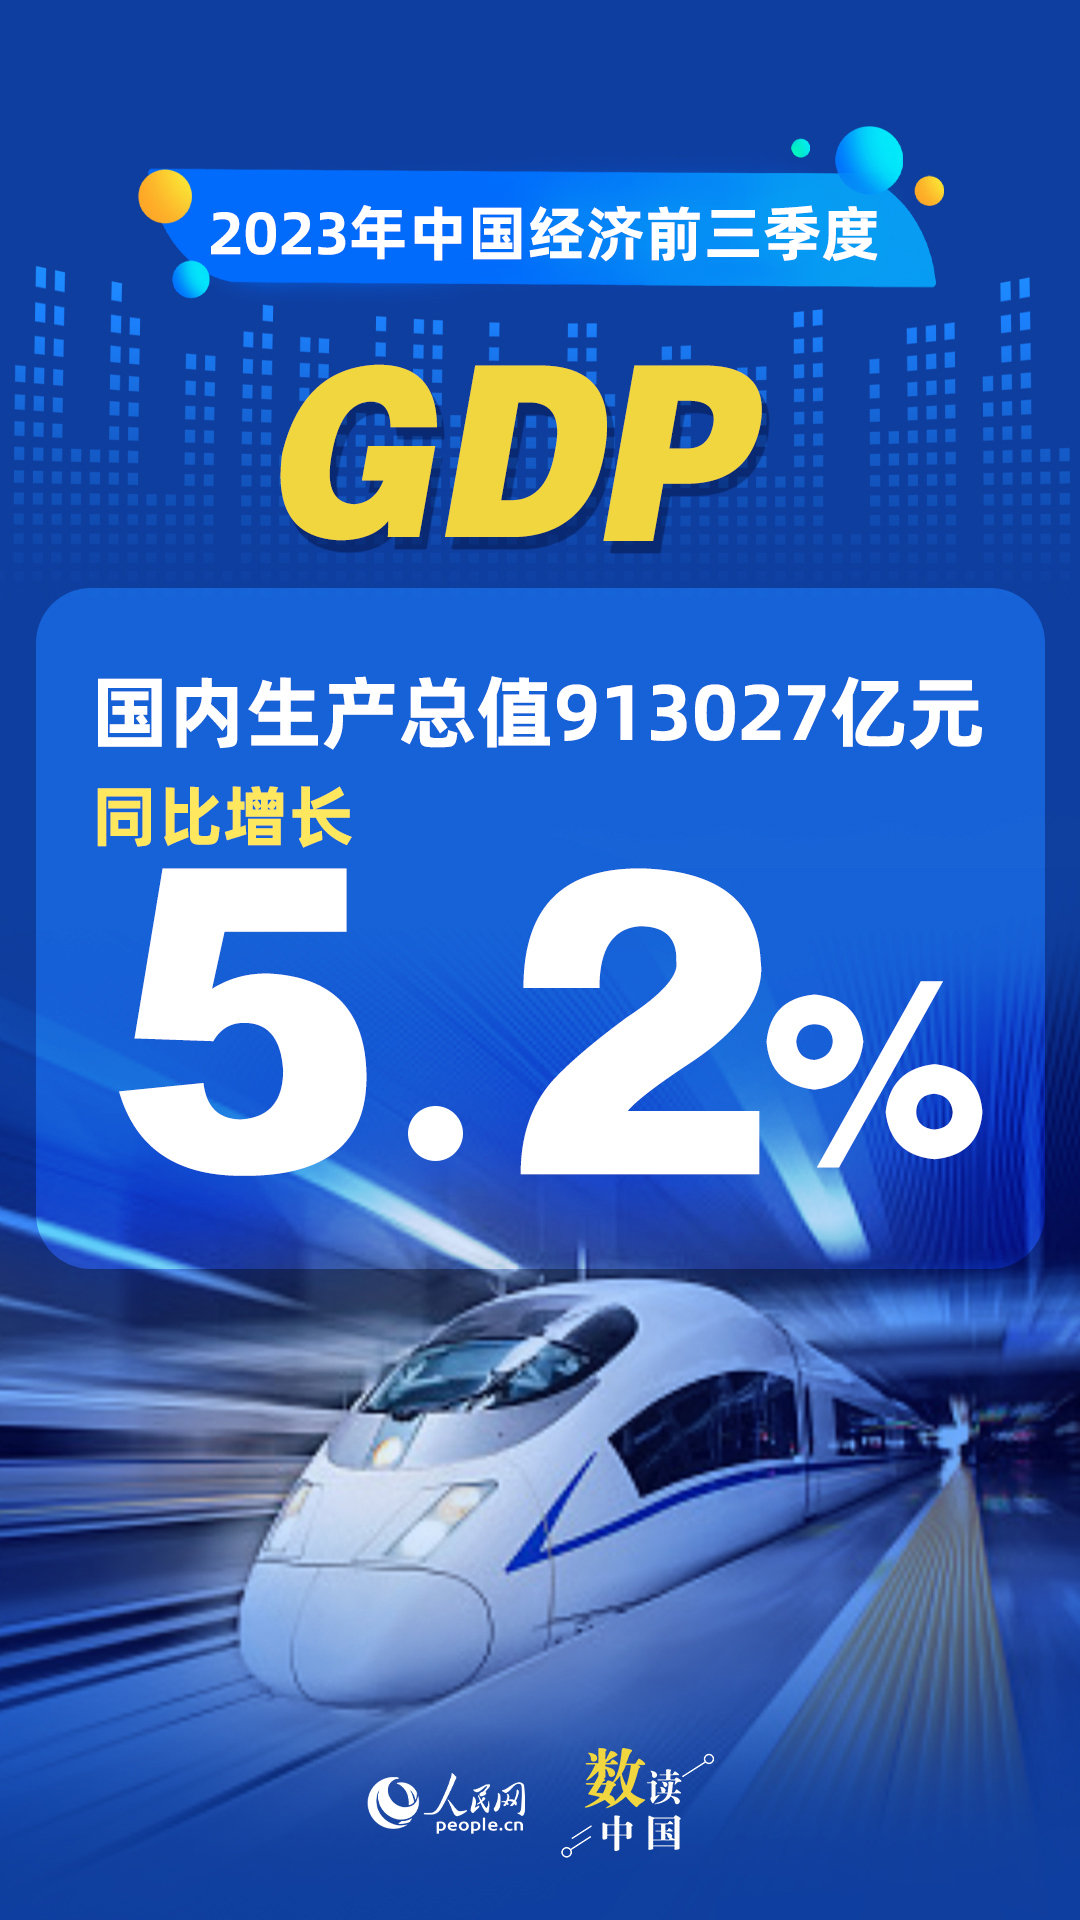 耀世注册：数读中国 | 前三季度国民经济持续恢复向好 积极因素累积增多